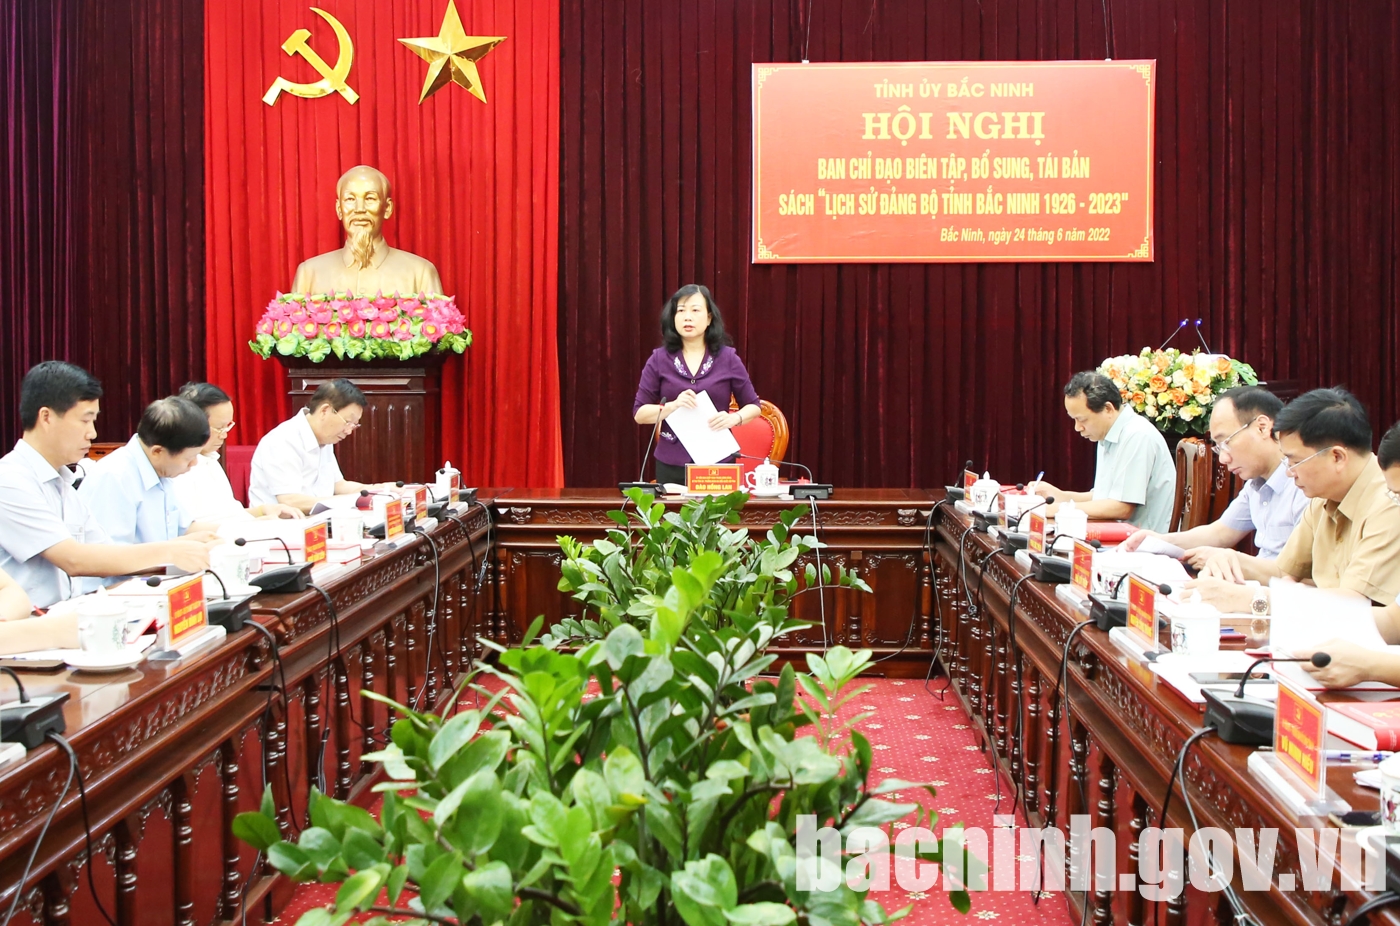 Hội nghị lấy ý kiến bổ sung, tái bản sách “Lịch sử Đảng bộ tỉnh Bắc Ninh”